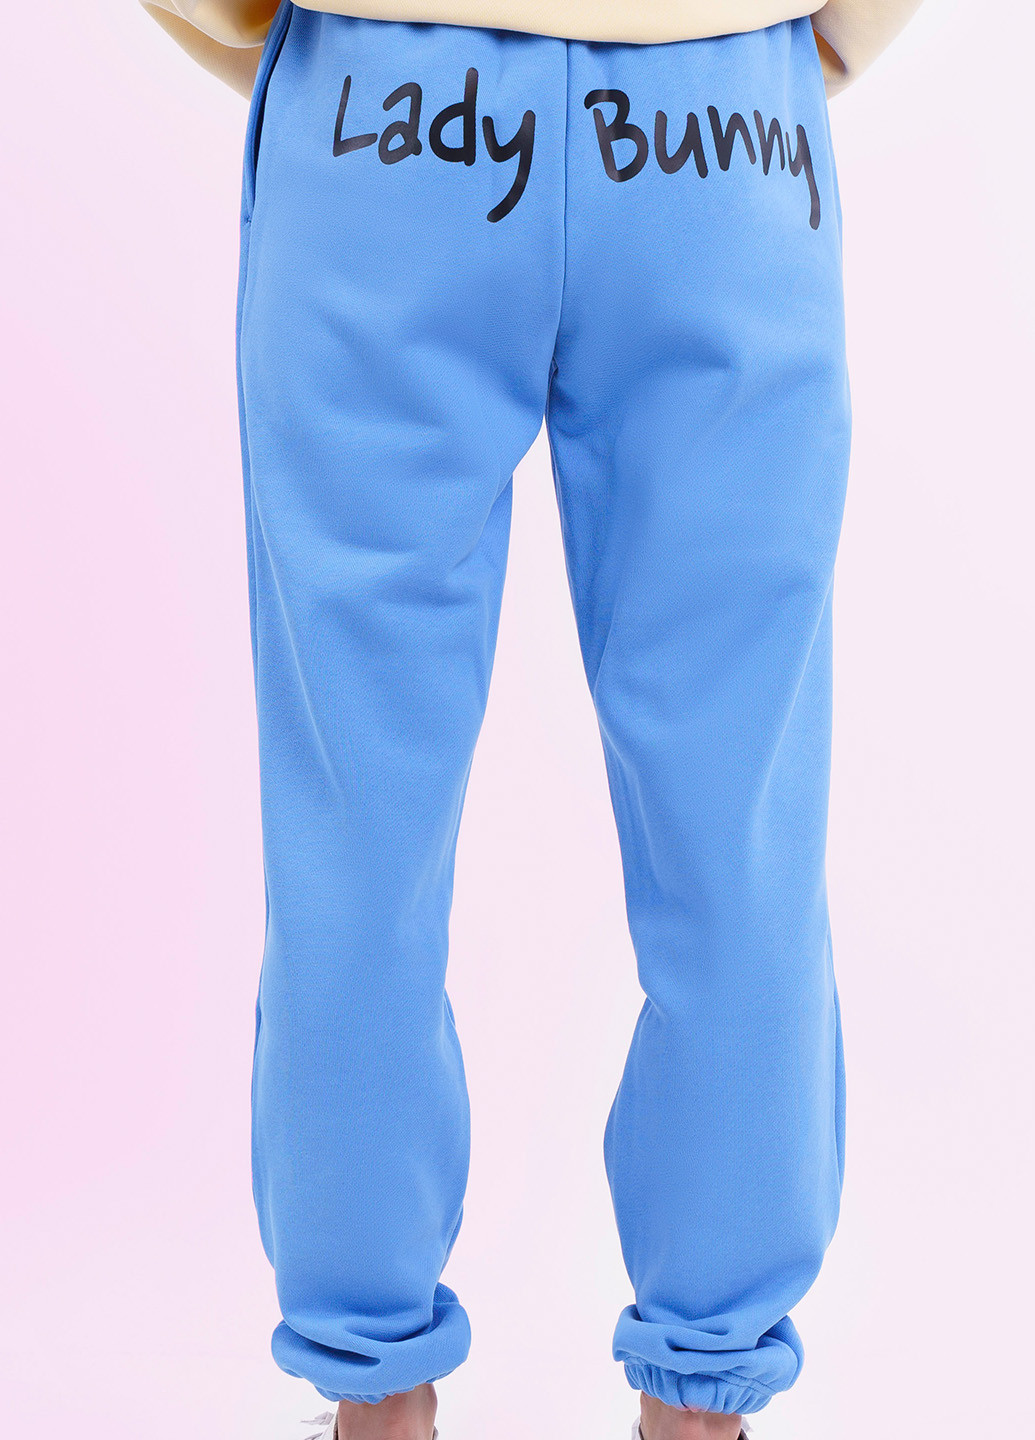 Синие спортивные джоггеры брюки Lady Bunny